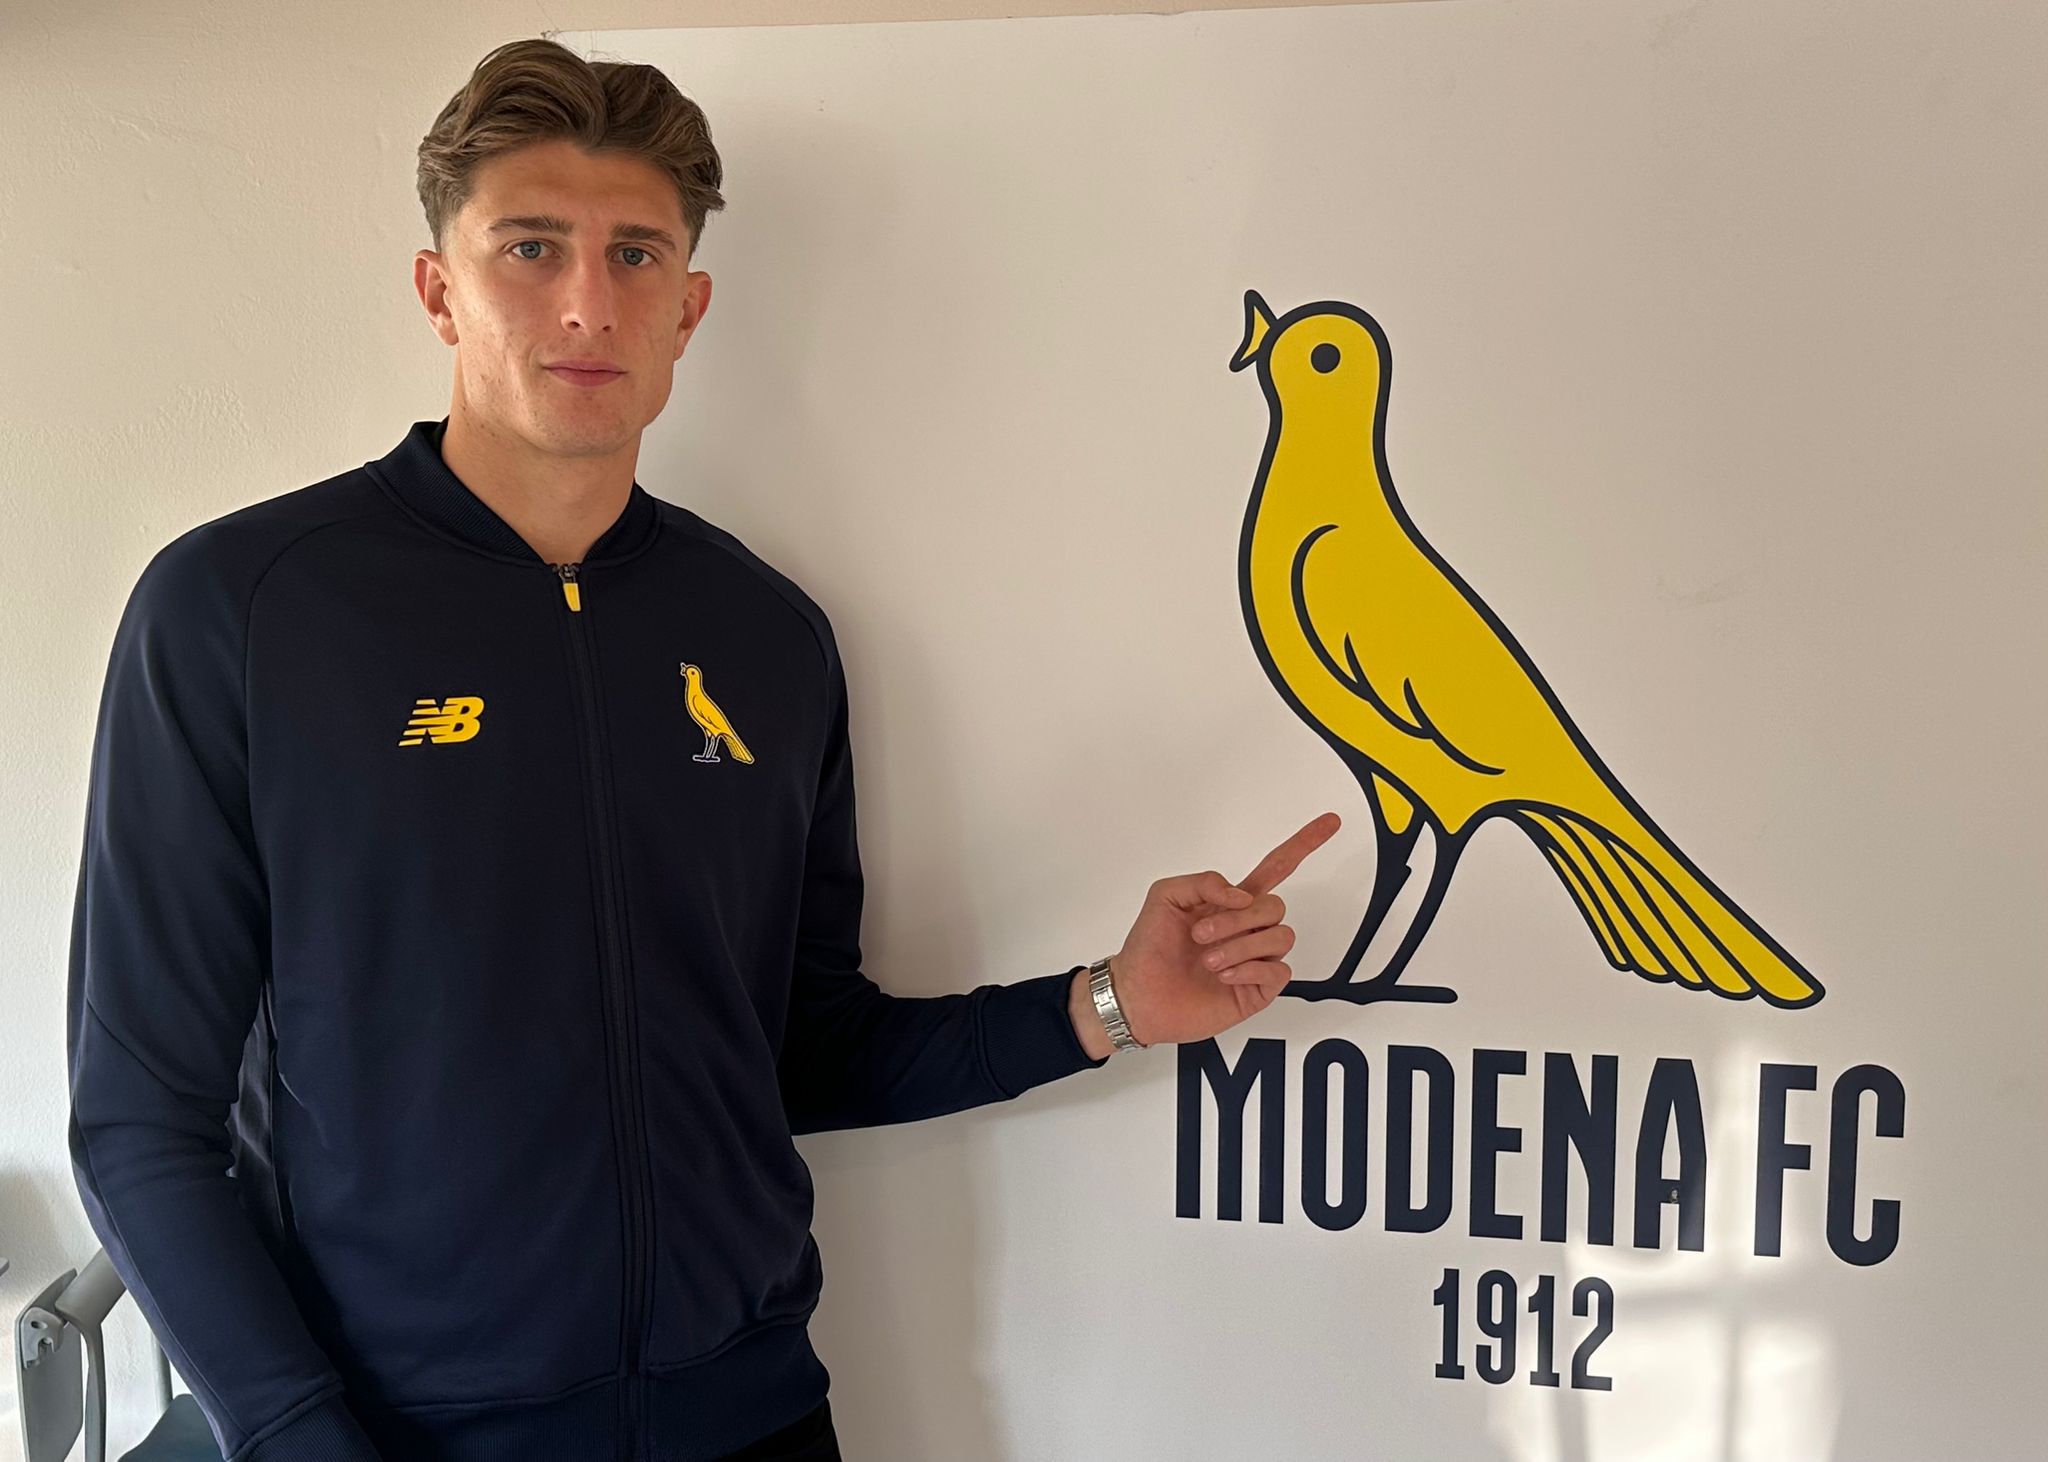 Modena & Cittadella: la vittoria di tutti - Modena FC